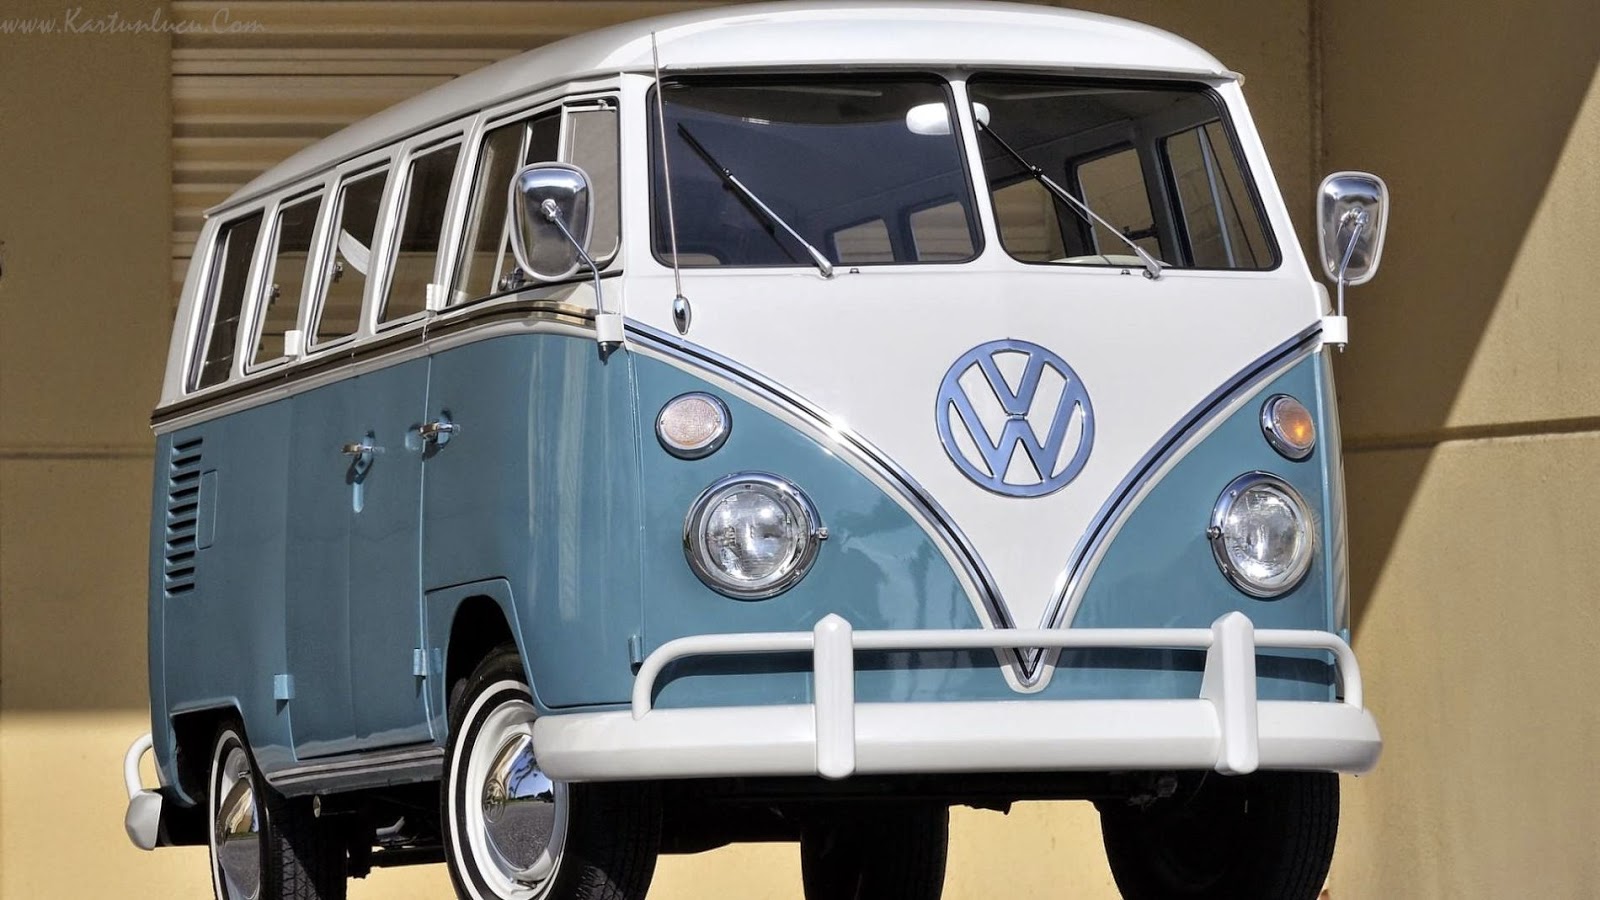 Wallpaper Mobil Volkswagen Klasik Keren Gambar Kartun Gambartopcom